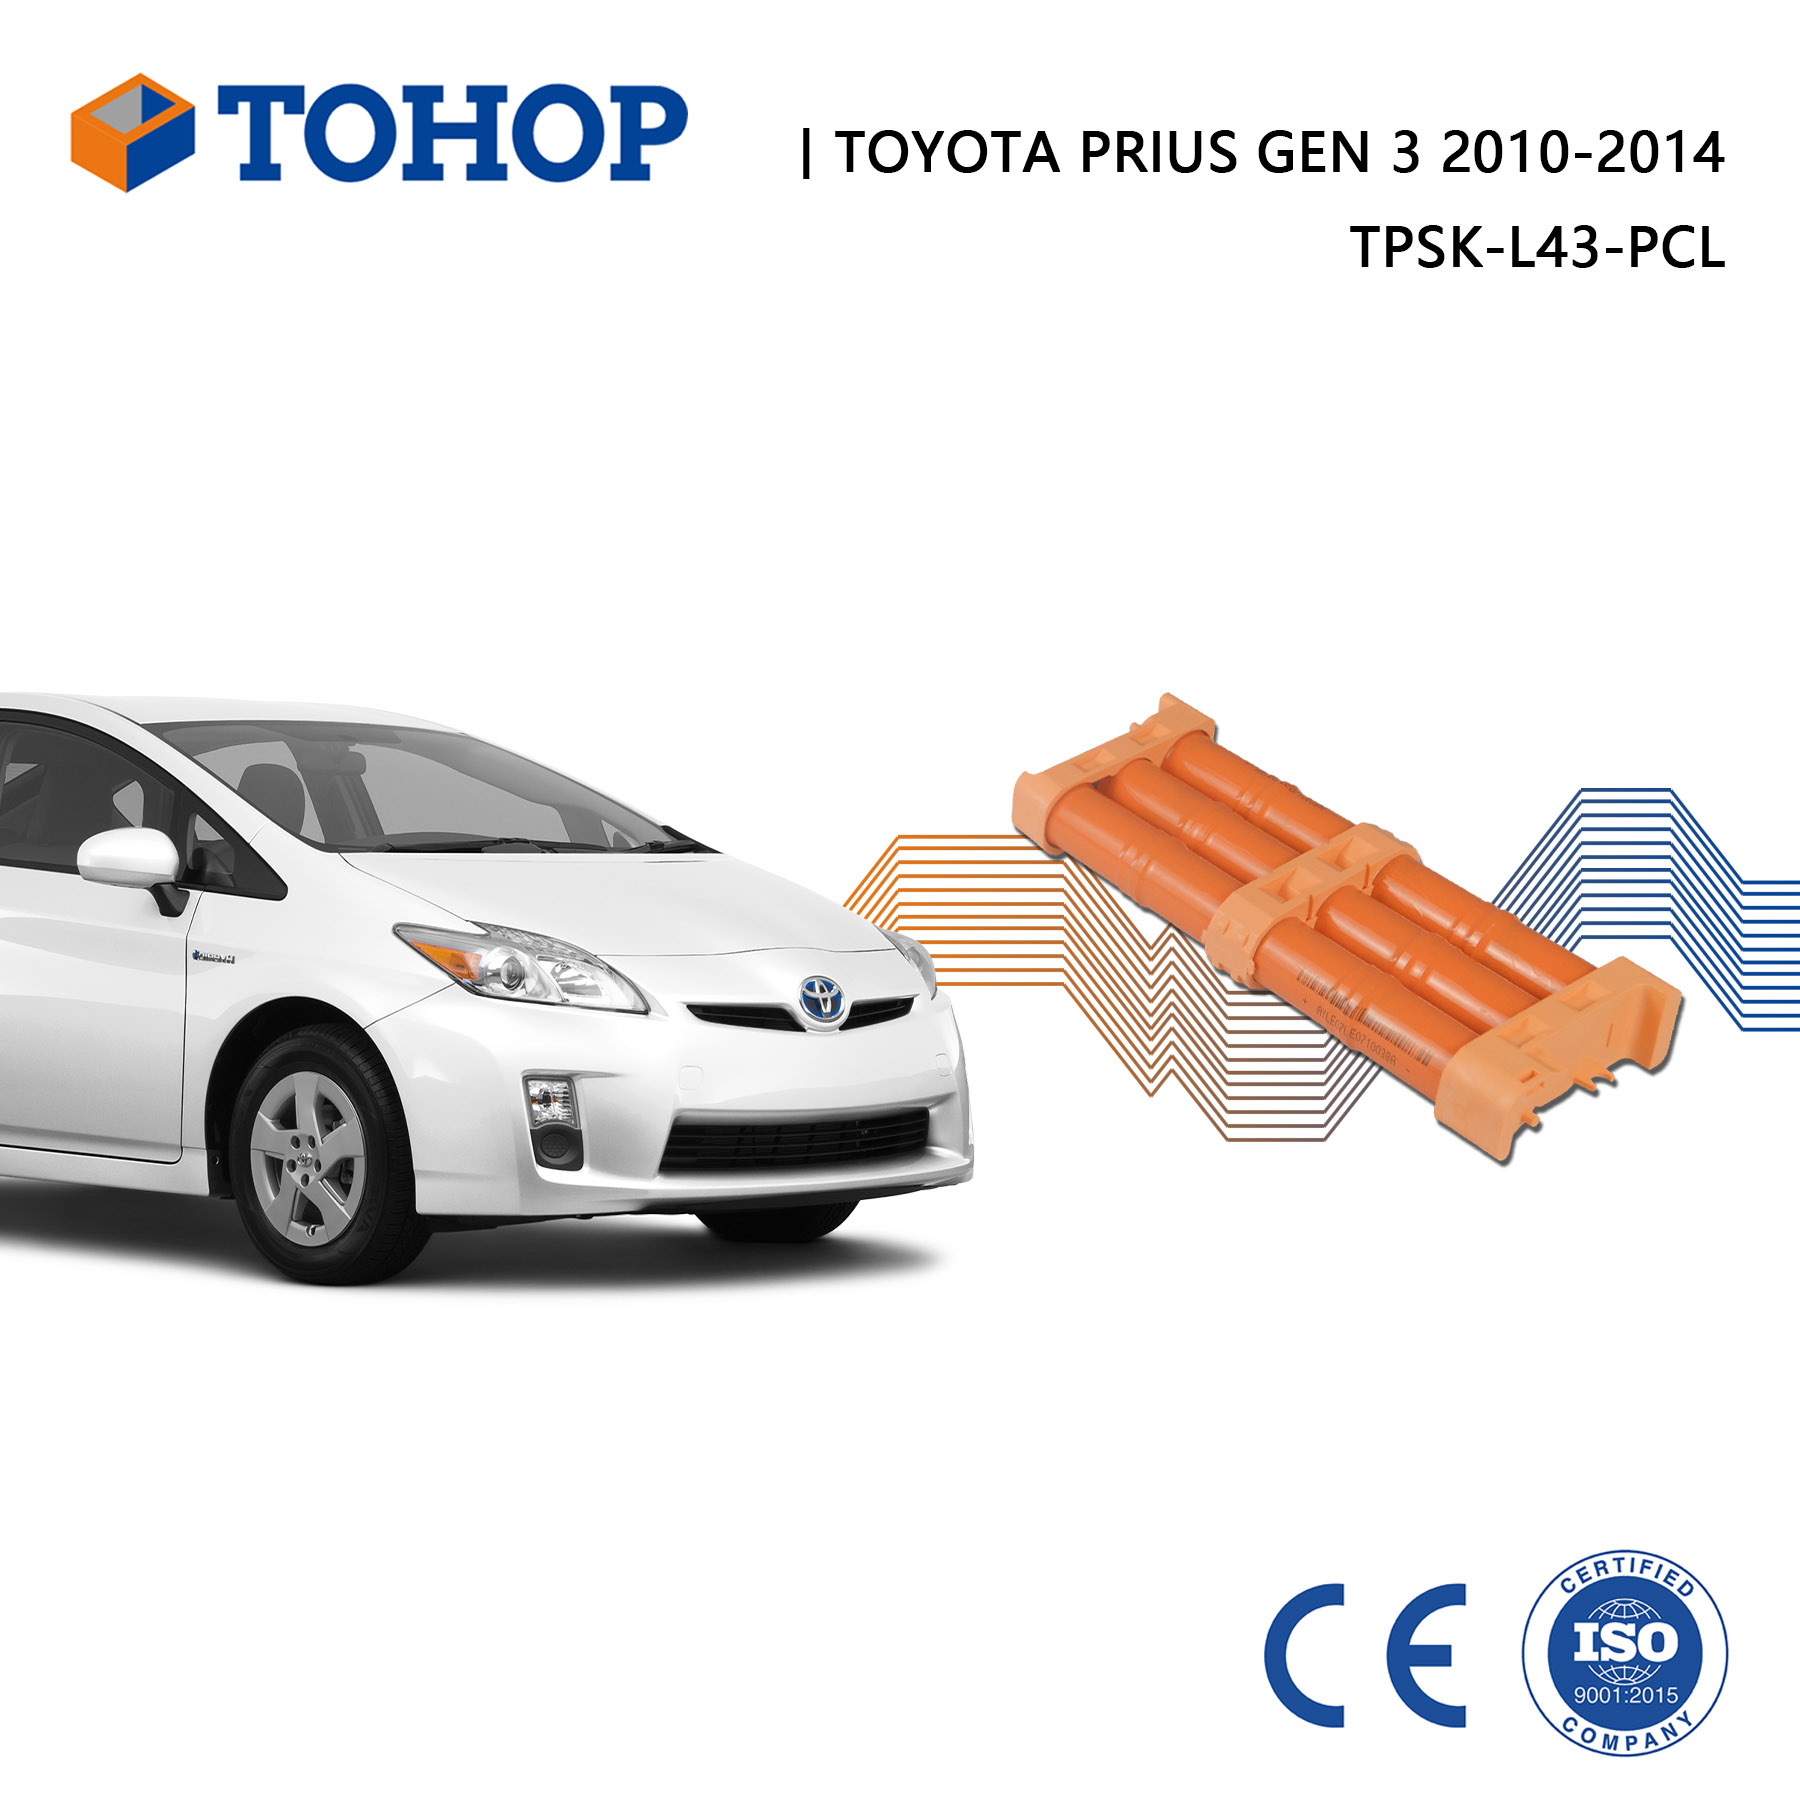 Brandneue Prius Gen 3 2014 Hybrid-Autobatterie für Toyota